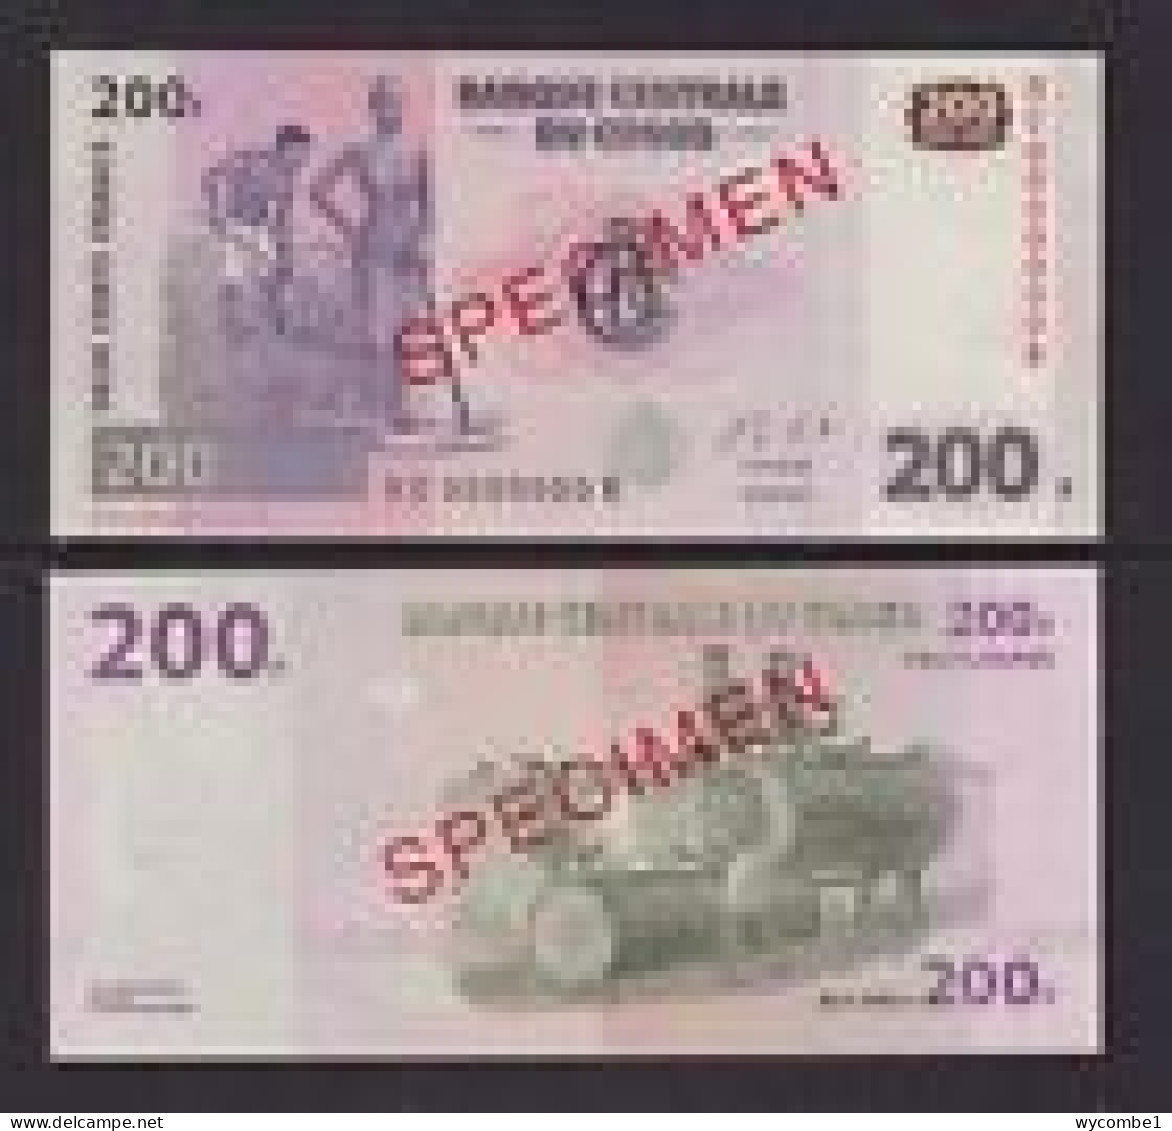 CONGO DR  -  2013 200 Francs Specimen UNC  Banknote - República Democrática Del Congo & Zaire